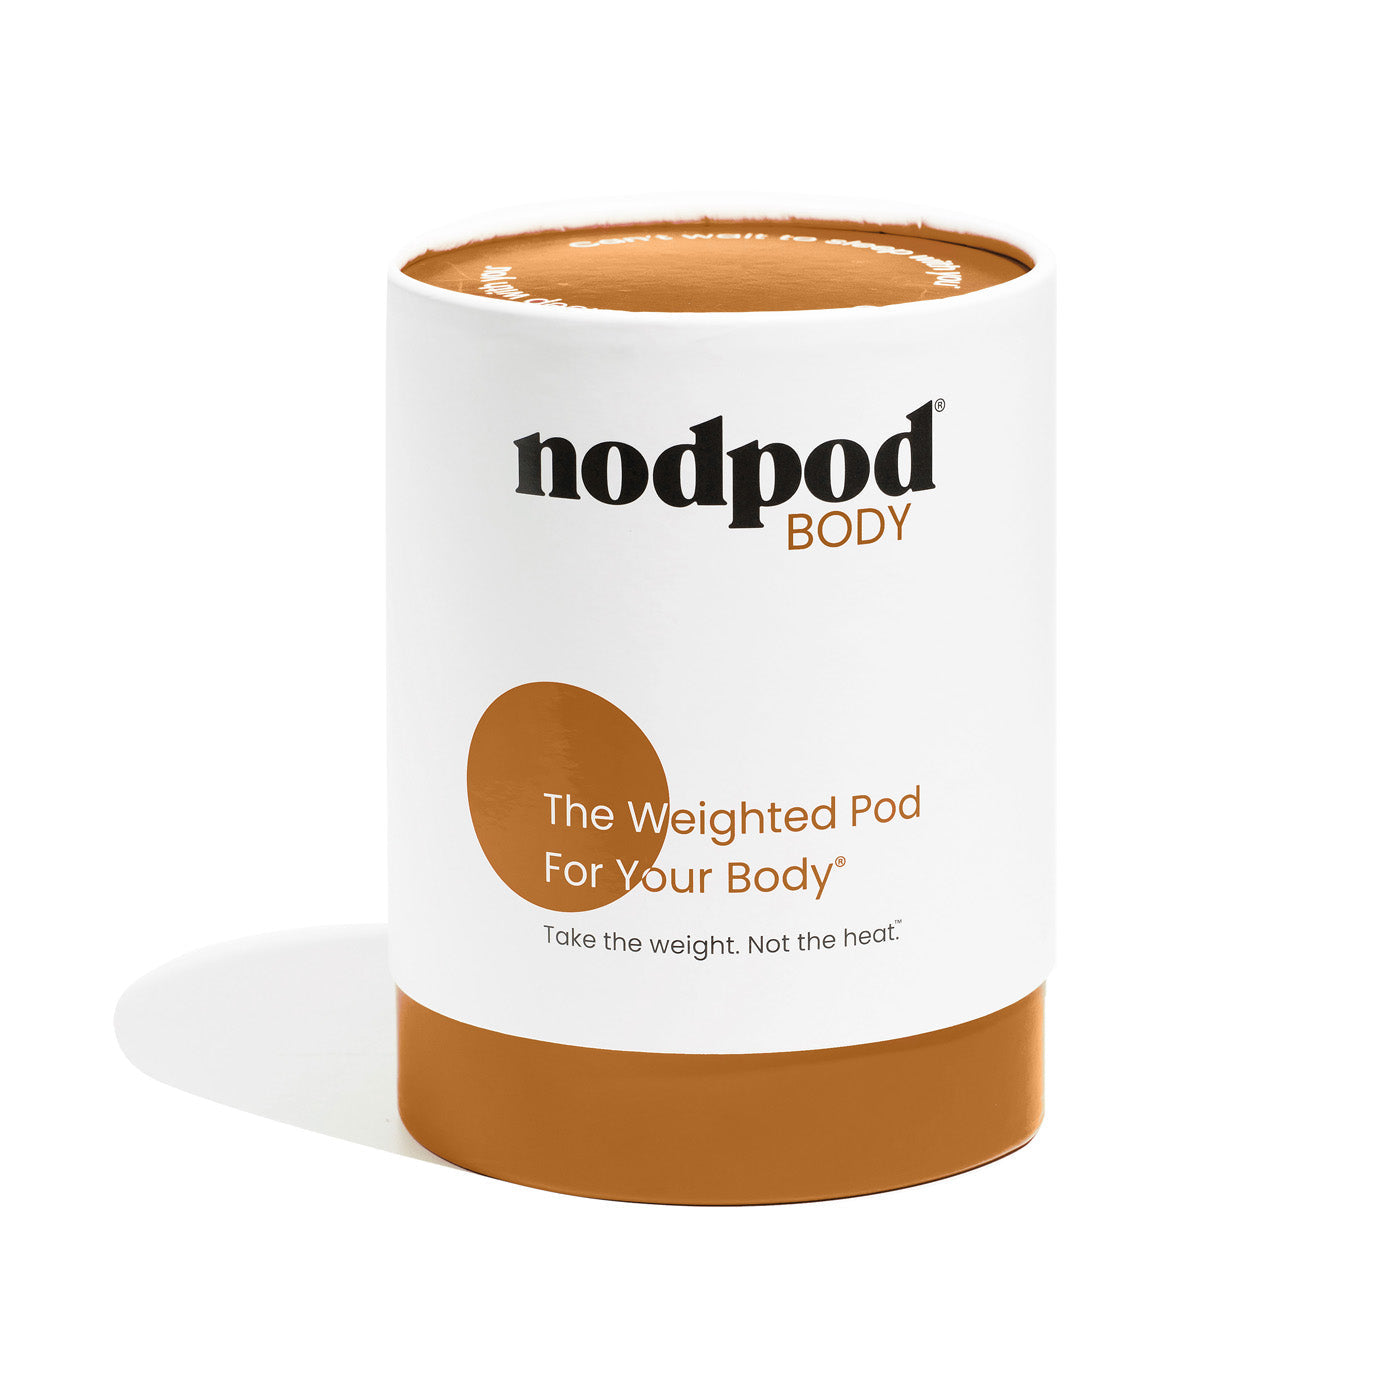 Nodpod BODY – nodpod